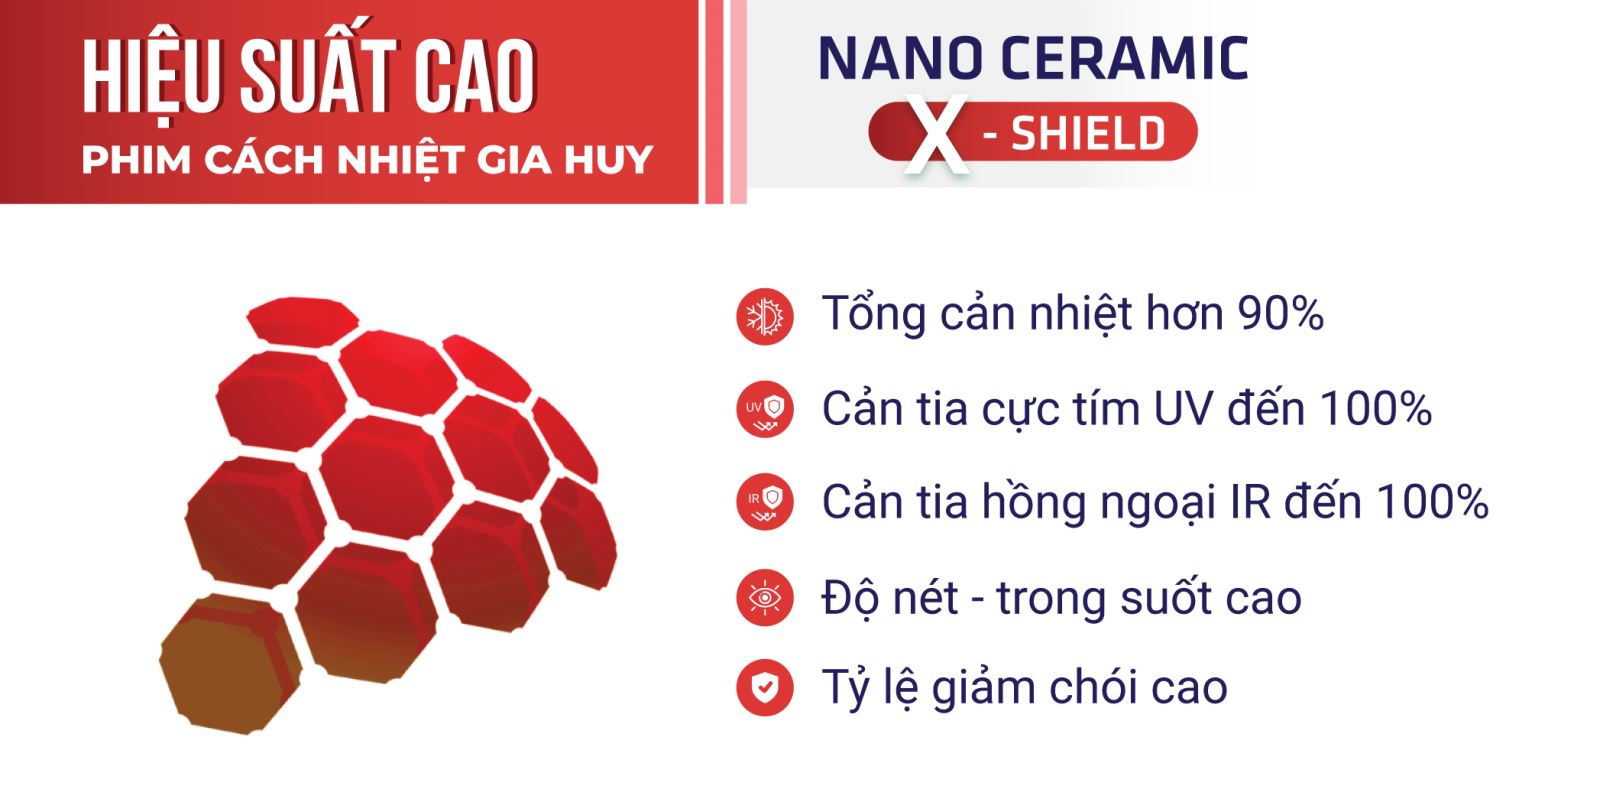 Tính năng vượt trội của công nghệ Nano Ceramic X-Shield 